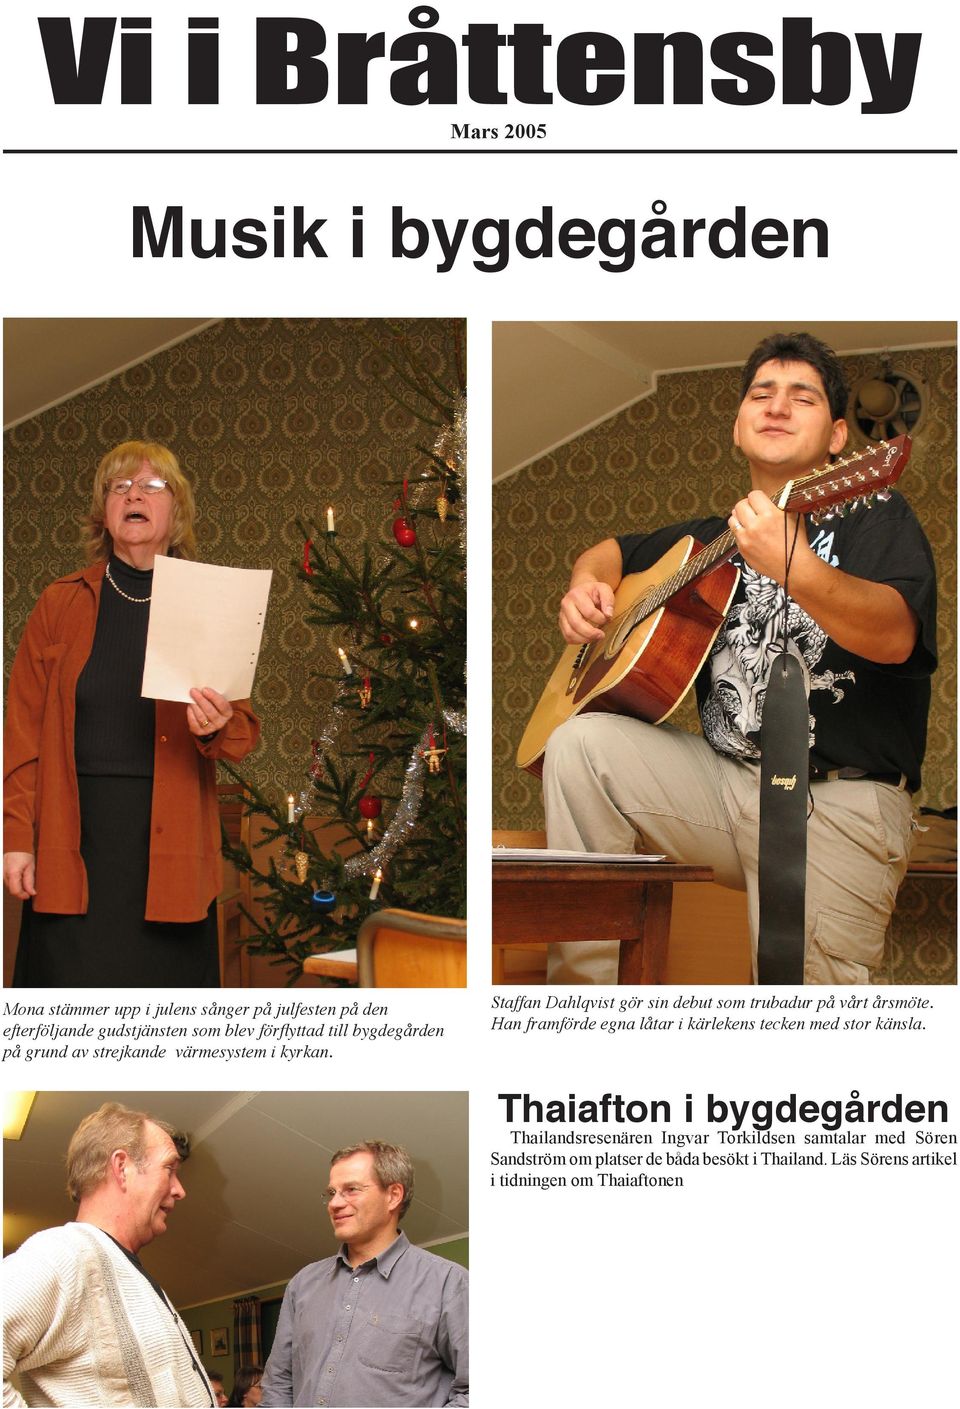 Staffan Dahlqvist gör sin debut som trubadur på vårt årsmöte. Han framförde egna låtar i kärlekens tecken med stor känsla.